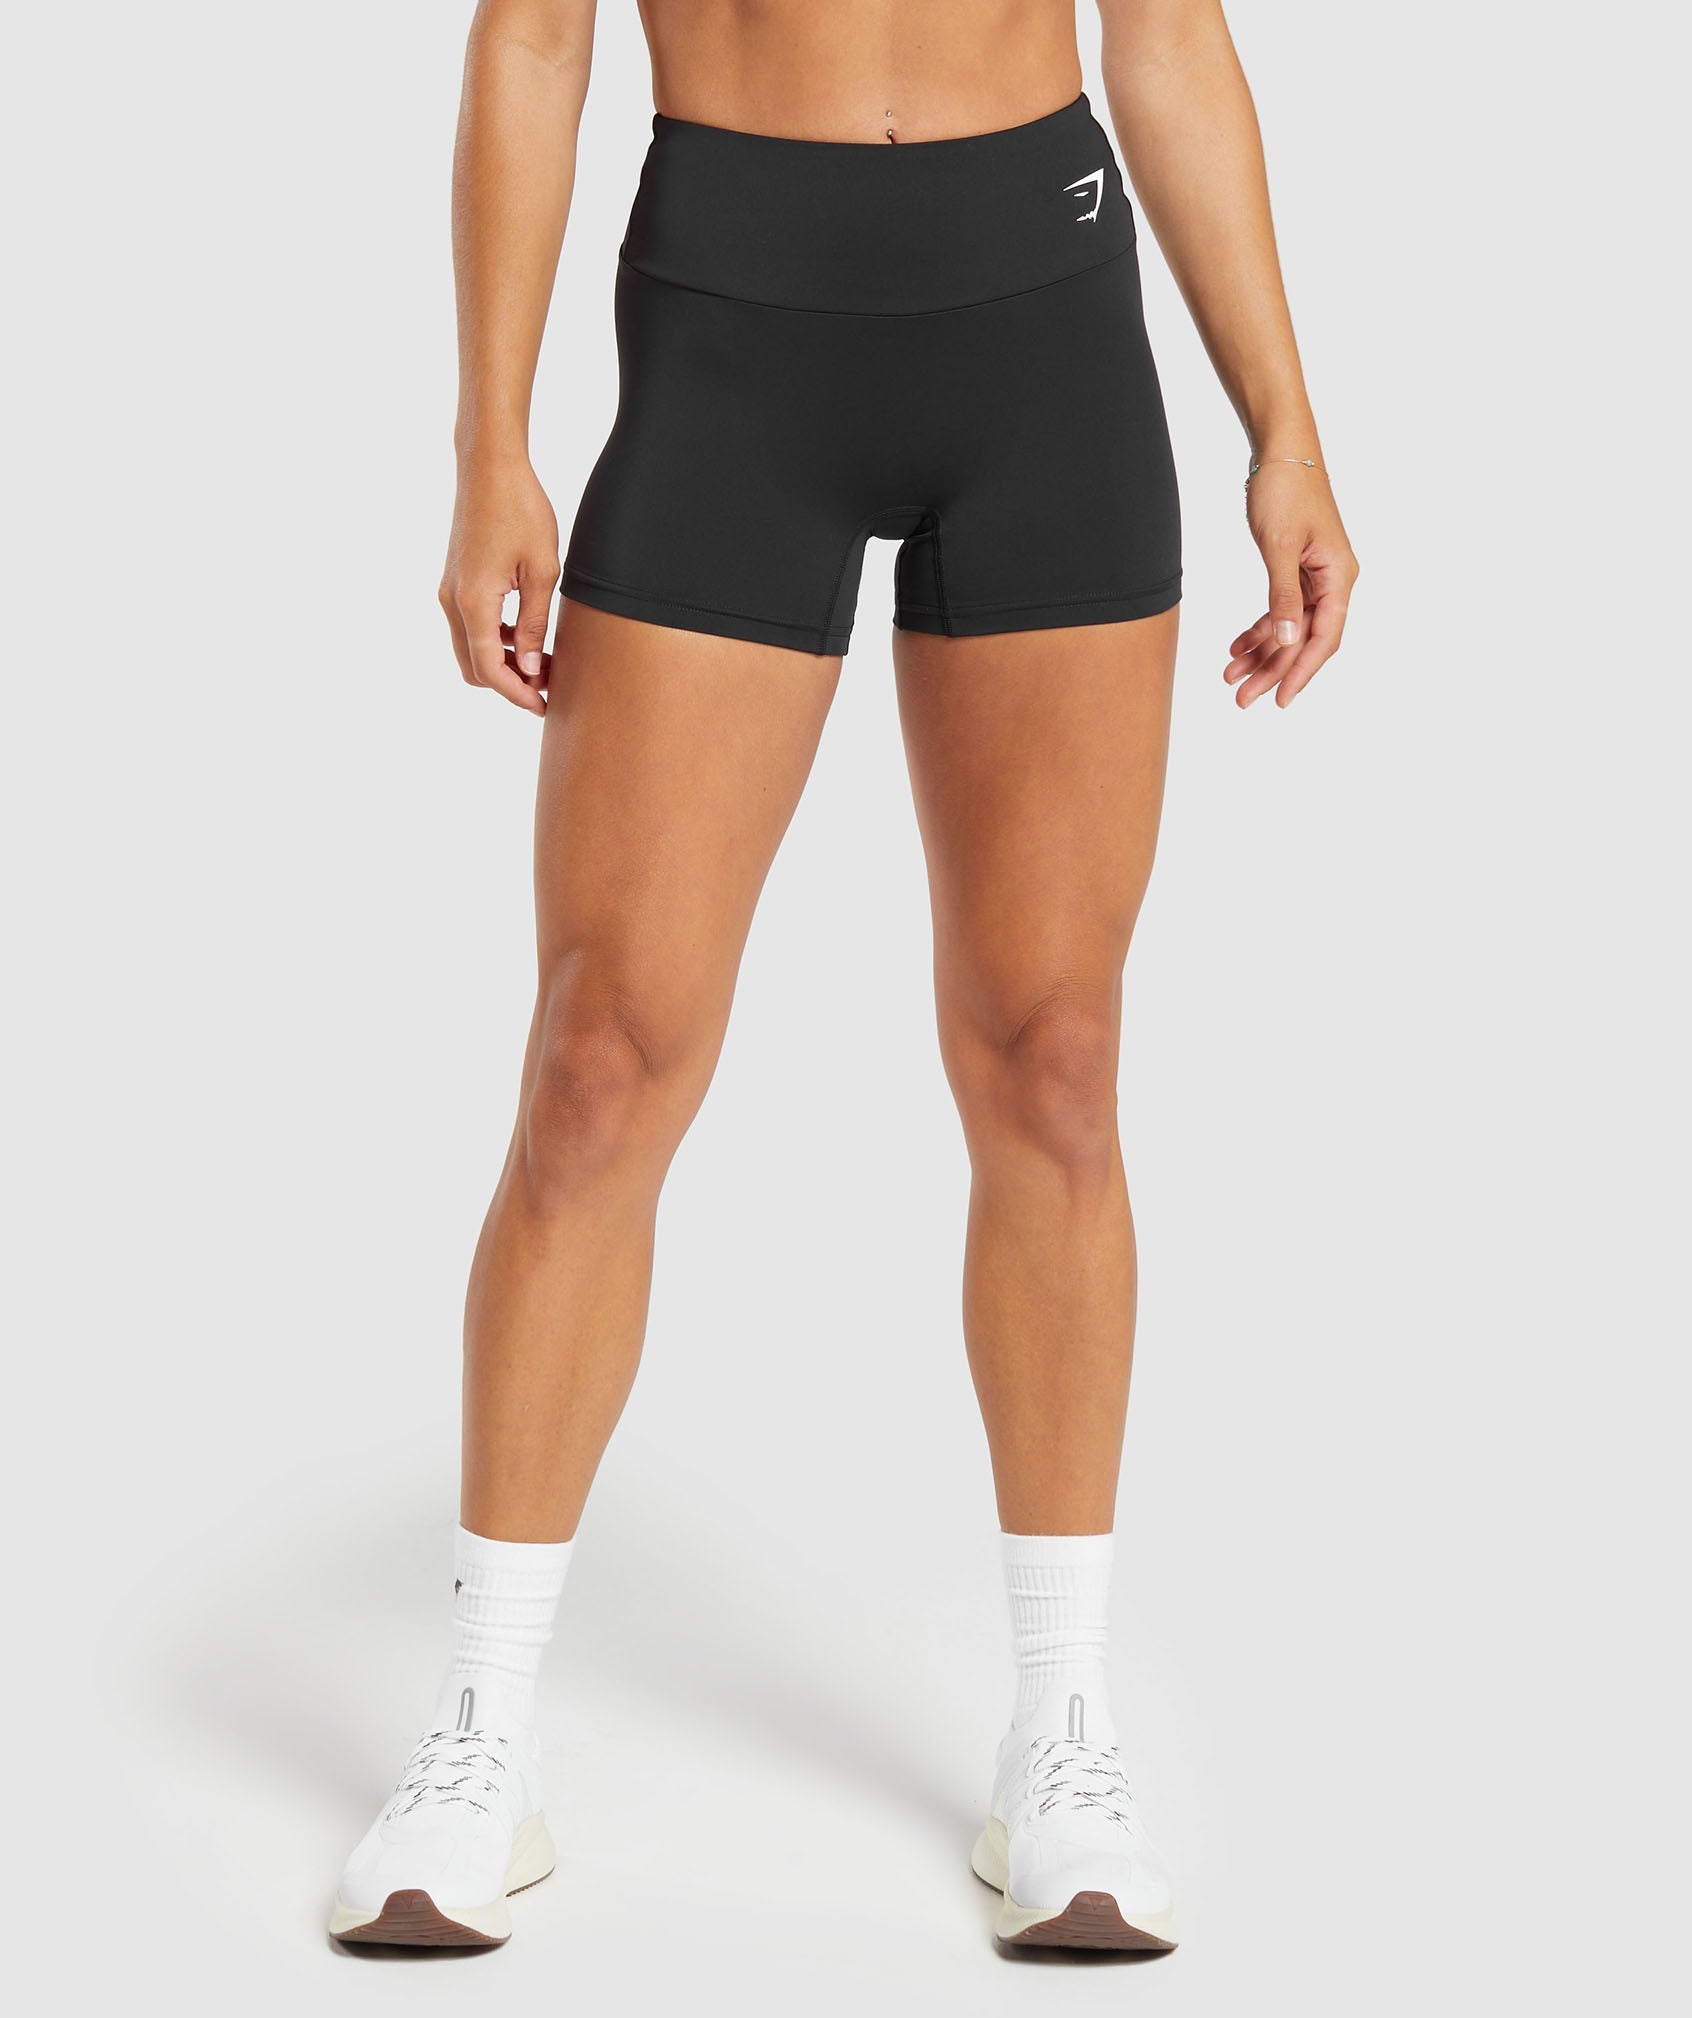 Women's Booty Shorts, FKN Gym Wear